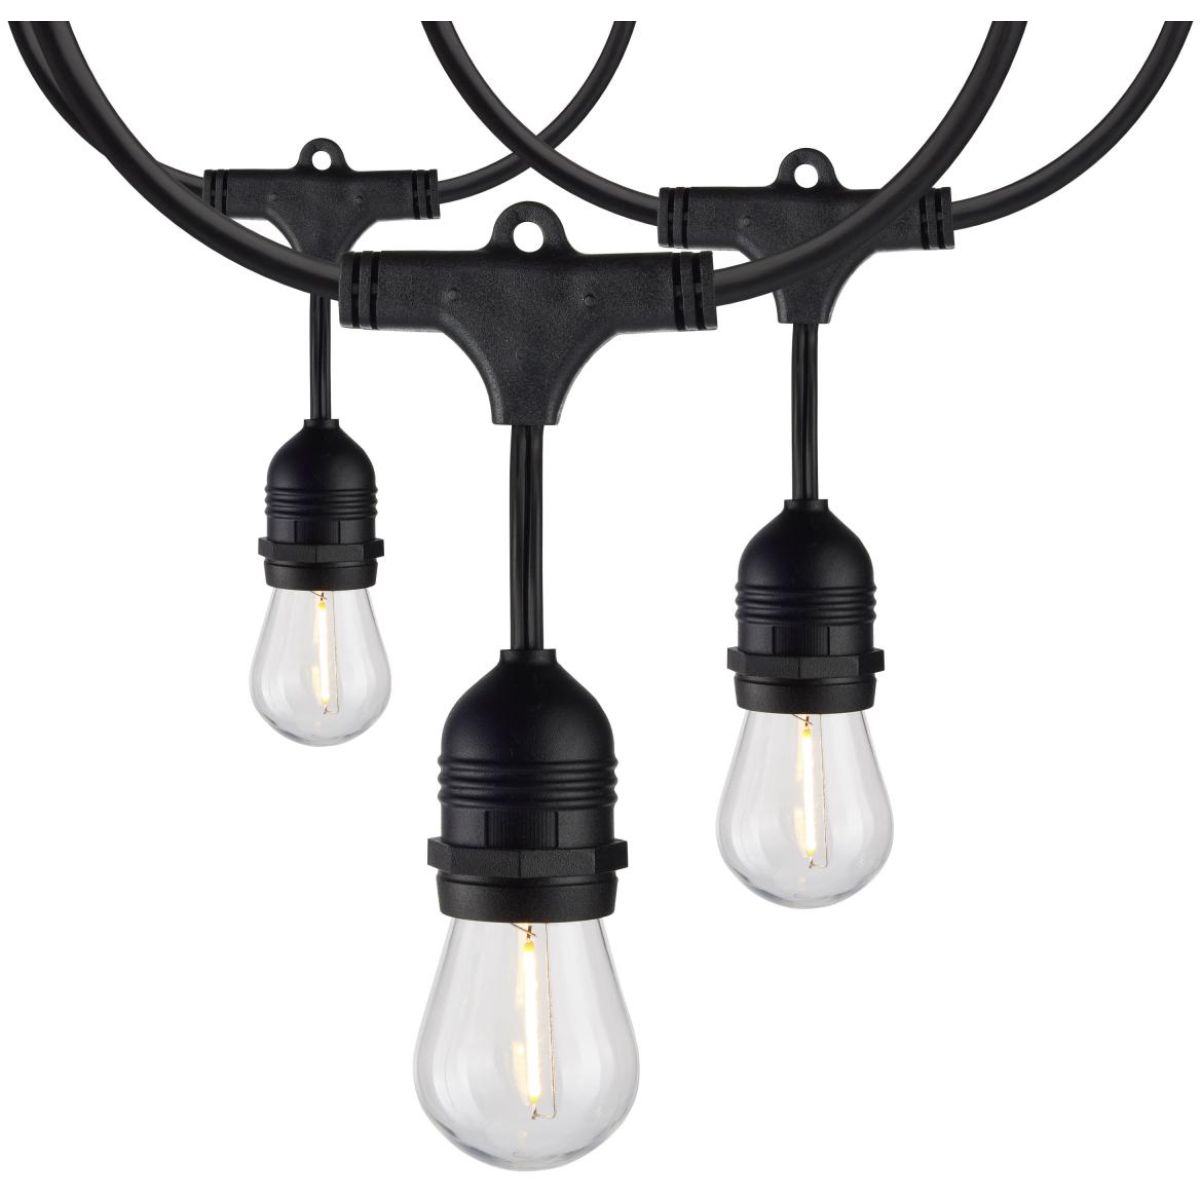 2 Pack of 24 Feet LED String Light, 12 S14 bulbs, Warm White 2200K, 120V, Indoor/Outdoor